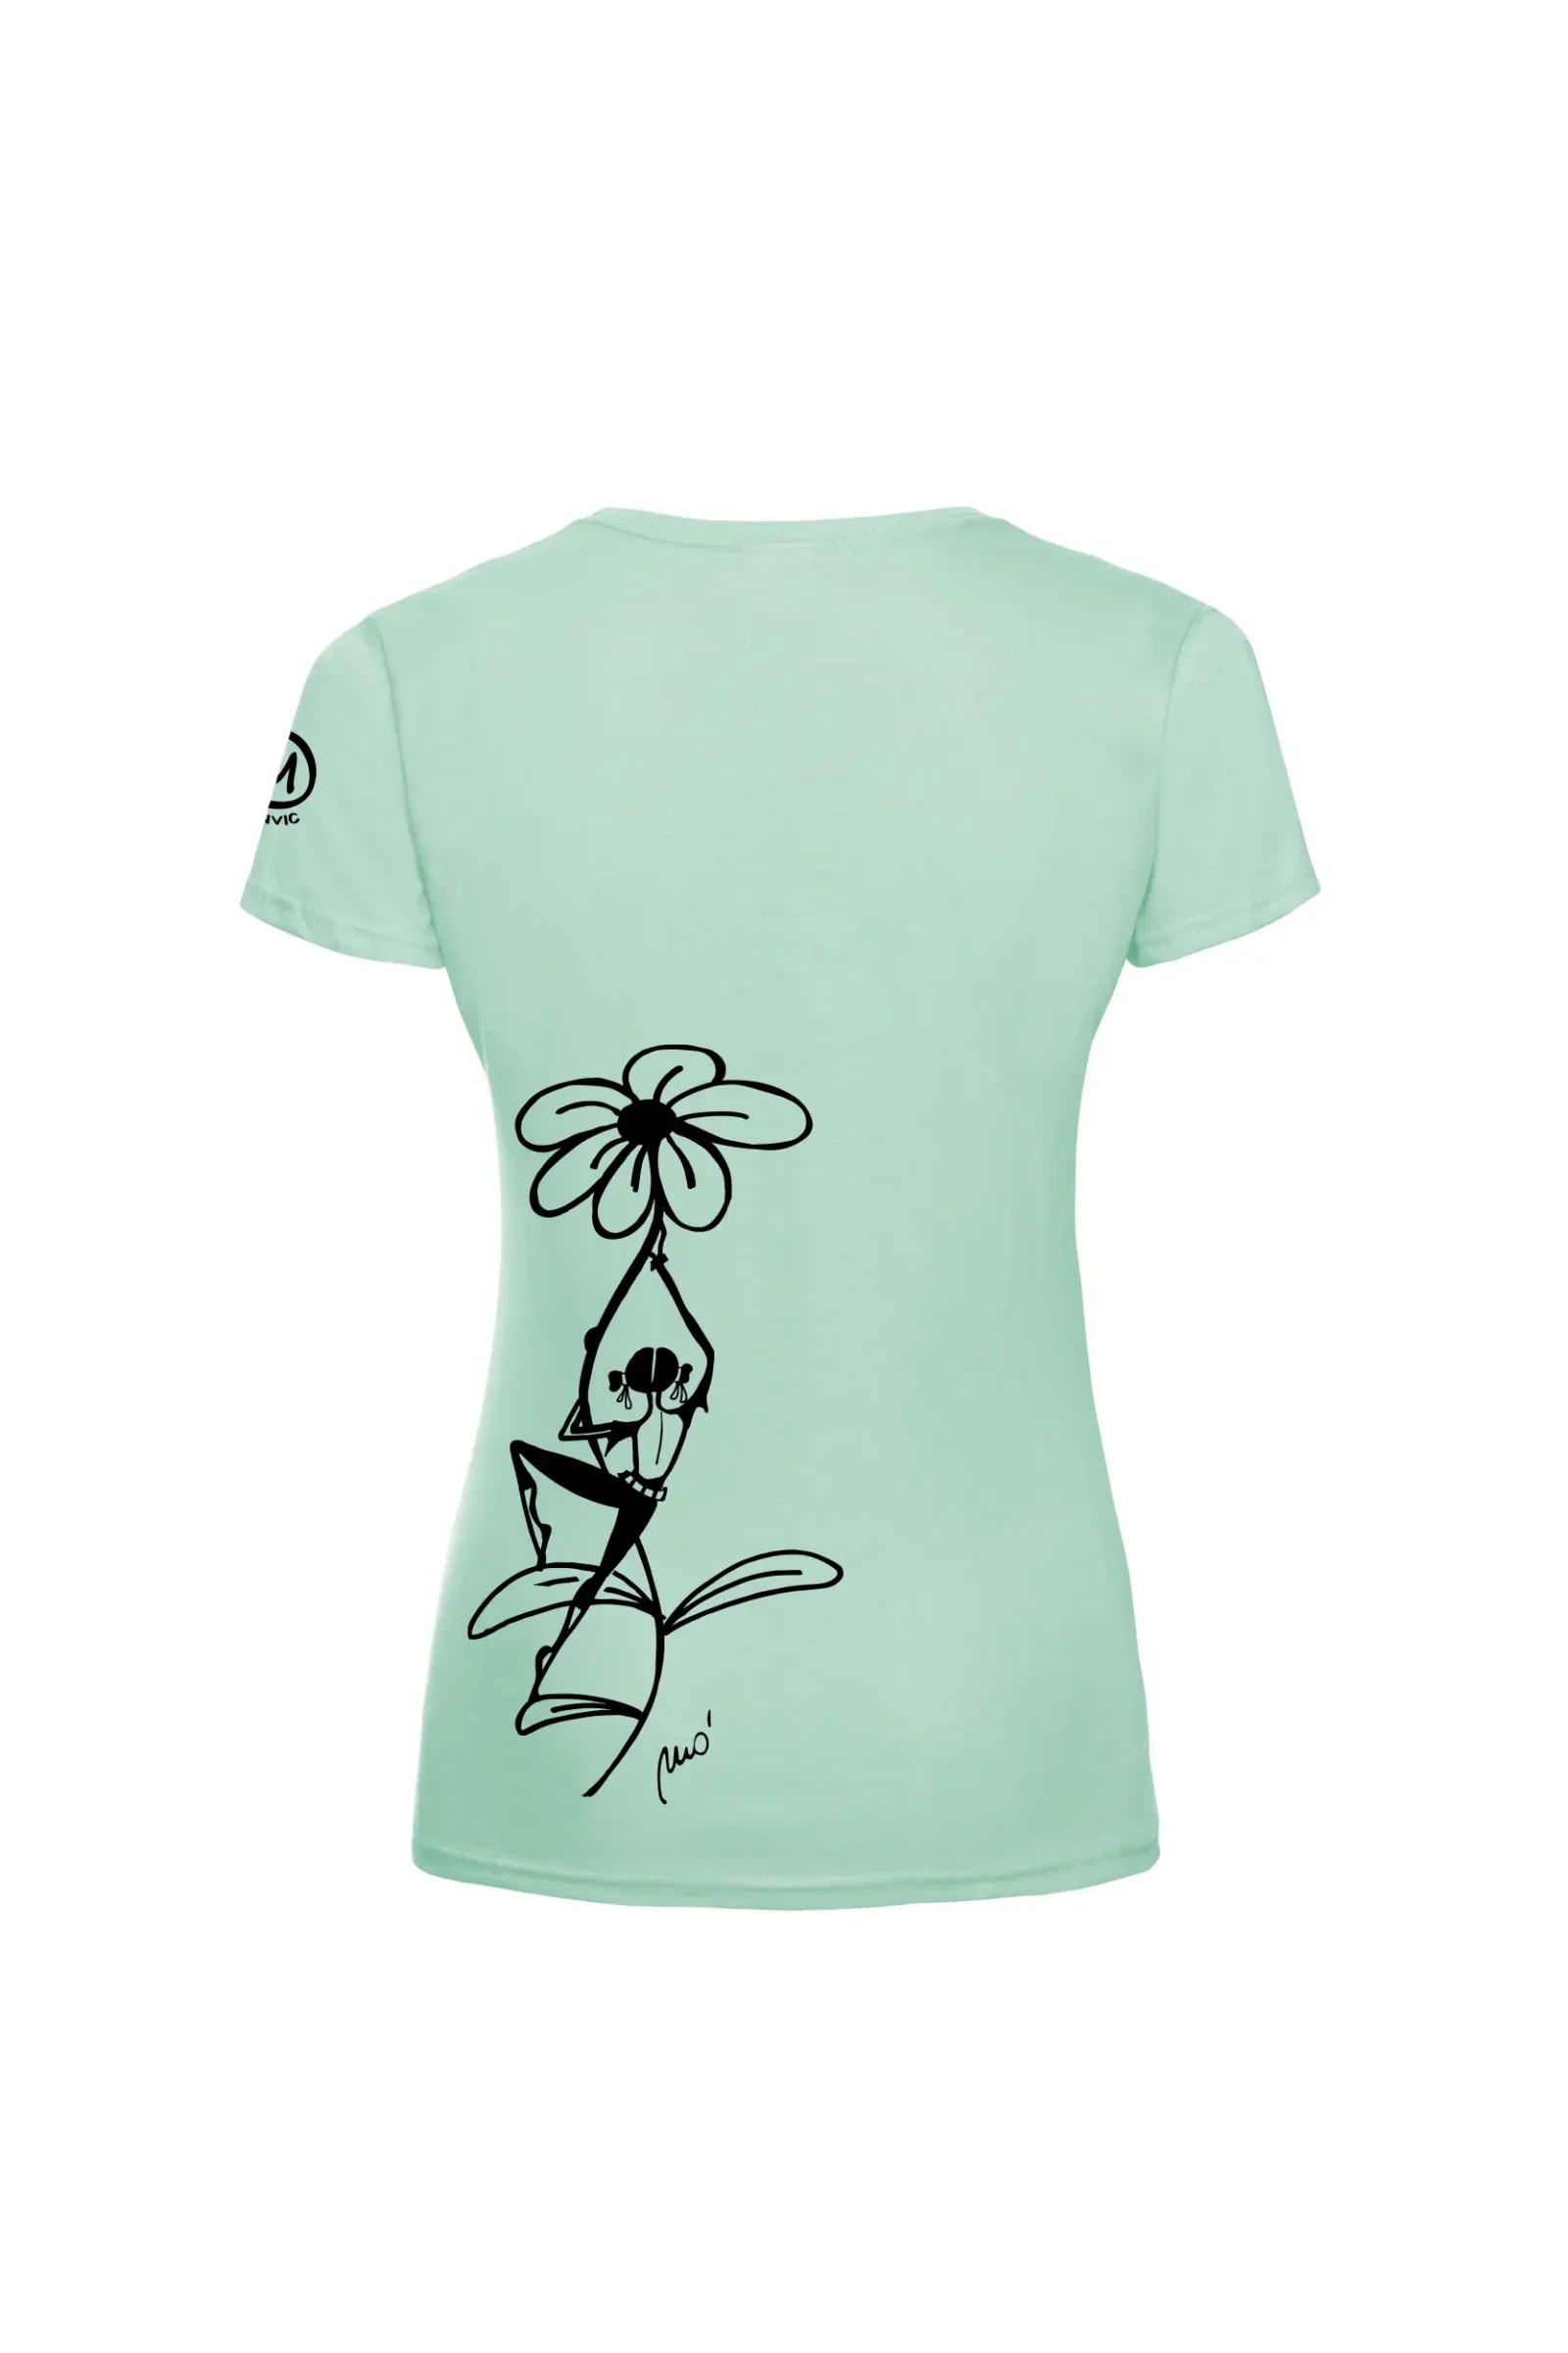 Women's climbing t-shirt - aqua organic cotton - "Carla" SHARON ORGANIC by MONVIC